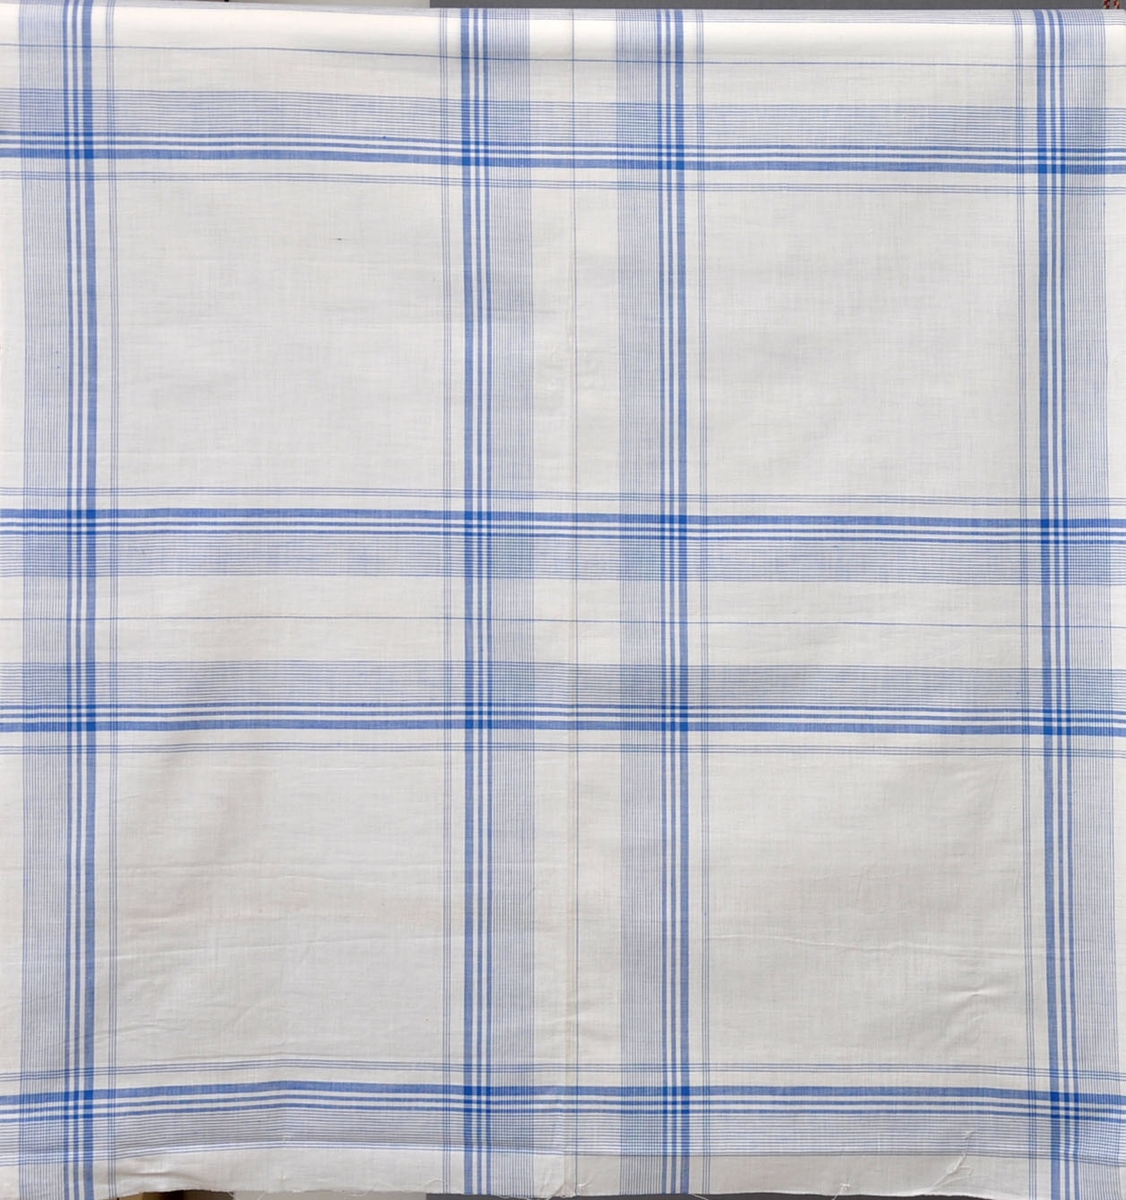 Näsdukar i bomull, 1940-tal.
Vävt mönster med blå bård och bottenrutning på vit botten.
Otvinnat garn.
Vävda 2 i bredd med en markering i klipplinjen.
51,5 x 53,5 cm.